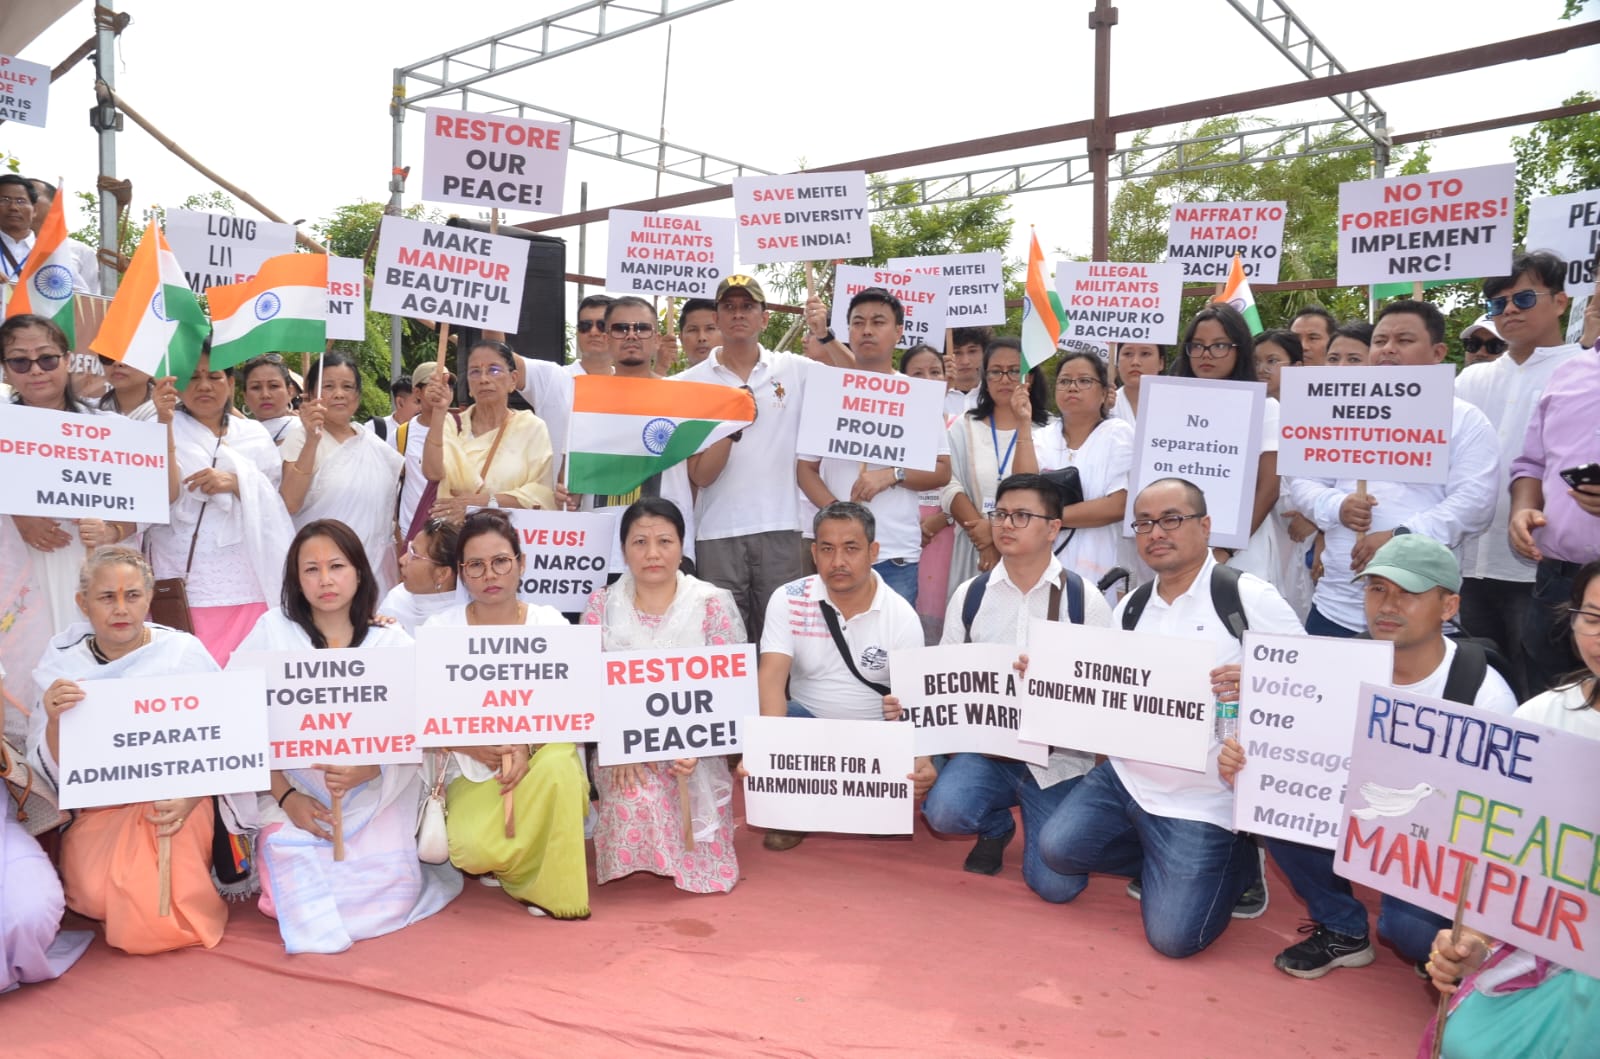 मणिपुर की अखंडता को बचाने के लिए 17 जून को एक शांतिपूर्ण विरोध प्रदर्शन आयोजित किया गया था आज़ाद मैदान, मुंबई, दोपहर 3 से 6 बजे तक। द्वारा संयुक्त रूप से विरोध प्रदर्शन का आयोजन किया गया विश्व मीटई परिषद (डब्ल्यूएमसी), महाराष्ट्र इकाई, मणिपुरी (मीतेई) एसोसिएशन (एमएमए), नवी मुंबई, मुंबई मणिपुरी सॉलिडेरिटी ग्रुप, एसोसिएशन ऑफ मणिपुरी डायस्पोरा (एएमएएनडी), पुणे और द मुंबई पीसफुल विरोध समूह. समूहों ने सम्मान और प्रार्थना करने के लिए एक मिनट का मौन रखा उन लोगों के लिए जिन्होंने अपनी जान गंवाई है. हिंसा के पैंतालीस दिनों के बाद भी प्रधानमंत्री चुप हैं और चुप हैं समझौते या सुलह के लिए कोई अपील नहीं की। 100 से अधिक लोग अपनी जान गंवा चुके हैं और 60,000 लोग विस्थापित हो चुके हैं पुनर्वास केंद्रों में शरण वहीं भारी गोलीबारी की खबरें अभी भी आ रही हैं हर दिन। लोग इस युद्ध की स्थिति में कई सुरक्षा के साथ रह रहे हैं मणिपुर के कई इलाकों में सेनाएं, भीड़ का जमावड़ा और झड़पें। सभी हिस्सों से विभिन्न समुदायों और धर्मों के लगभग 500 लोग मुंबई, नवी मुंबई, ठाणे, रायगढ़ और पुणे के लोग विरोध करने पहुंचे मणिपुर में हिंसा और शांति बहाली की मांग। गहरी चिंता के साथ मणिपुर में चल रही हिंसा पर, जिसमें कई लोगों की जान ले ली गई है गांवों को नष्ट कर दिया गया, मणिपुरी समूहों ने तत्काल कार्रवाई की मांग की केंद्र और राज्य सरकार. "कोई अलग प्रशासन नहीं", "हम शांति चाहते हैं", "मोदीजी हमारी मदद करें", "स्टॉप हिल- वैली डिवाइड'', ''मेइतेई को भी संस्थागत संरक्षण की जरूरत है'', ''मेइतेई लाइव्स मामला'', ''वनों की कटाई रोकें-मणिपुर बचाएं'', ''मणिपुर एक है और रहेगा।'' एक रहो'', ''मणिपुर में शांति और सुंदरता बहाल करो'' के नारे थे विरोध करना। यह विरोध शांति और एकता का आह्वान था और इसके ख़िलाफ़ एक रैली थी ऐसी कोई भी ताकत जो इस भव्य की सांस्कृतिक विरासत और पहचान को खतरे में डालती है भूमि। लोगों की आवाजें मुंबई की सड़कों पर गूंजीं, मणिपुर के लिए न्याय और सुरक्षा की मांग। विरोध प्रदर्शन के सभी सात वक्ताओं ने शांति और कार्रवाई की मांग की सरकार। नबकिशोर सिंघा युमनाम, डब्ल्यूएमसी के प्रवक्ता, लिन लैशराम, एक मनोरंजन कलाकार और रॉबर्ट नाओरेम, प्रसिद्ध हथकरघा उद्यमी ने हिंसा रोकने के लिए तत्काल कार्रवाई की अपील की। नरेशचंद्र लैशराम, मेलोडी क्षेत्रीमयूम, रोहन फिलम, और खीरसाना युमलेम ने हिंसा और लोगों को गुमराह करने का विरोध किया ग़लत जानकारी, धर्म और एकतरफ़ा कहानियाँ। वक्ताओं ने इस बात पर जोर दिया कि हिंसा न तो हिंदू-ईसाई और न ही आदिवासी-गैर आदिवासी की लड़ाई है। “सरकार चुप क्यों है? लोग एक दूसरे को मार रहे हैं. मासूम जिंदगियां हैं मारे गए। घर जला दिए गए. यह हृदय विदारक है कि सरकार 45 दिनों से चुप है। यह स्वीकार्य नहीं है” लिन लैशराम ने बताया। “मणिपुरवासी भारत के नागरिक हैं, हमें उपेक्षित नहीं किया जाना चाहिए। हम सब के पास है उतना ही अधिकार जितना भारत में हर किसी को है। सरकार को शांति बहाल करनी चाहिए. राज्य में एक महीने से अधिक समय से इंटरनेट बंद है। बच्चे जी रहे हैं बिना शिक्षा के. भोजन और वस्तुओं की कीमत में वृद्धि हुई है. लोग हैं कष्ट। मेरी मांग है कि कोई अलग प्रशासन न हो, हमारा राज्य न हो टूटा हुआ”, रॉबर्ट नाओरेम ने मांग की। गुजरात दंगा तीन दिन में रोक दिया गया. मणिपुर में हिंसा जारी है चालीस से अधिक दिनों तक. क्या हम सबके मारे जाने का इंतज़ार कर रहे हैं? क्या है सरकार की मंशा? क्या हम विदेशी हैं? क्या हम भारत के नागरिक नहीं हैं? मणिपुर एक छोटा सा राज्य है लेकिन इसने कई अंतरराष्ट्रीय प्रतियोगिताओं में भारत का प्रतिनिधित्व किया है खेल और कला मंच। कृपया हमारे जीवन और घरों को बचाएं”, अनुरोध किया प्रदर्शनकारी. विरोध प्रदर्शन समर्थक कार्रवाई की जोरदार मांग के साथ संपन्न हुआ